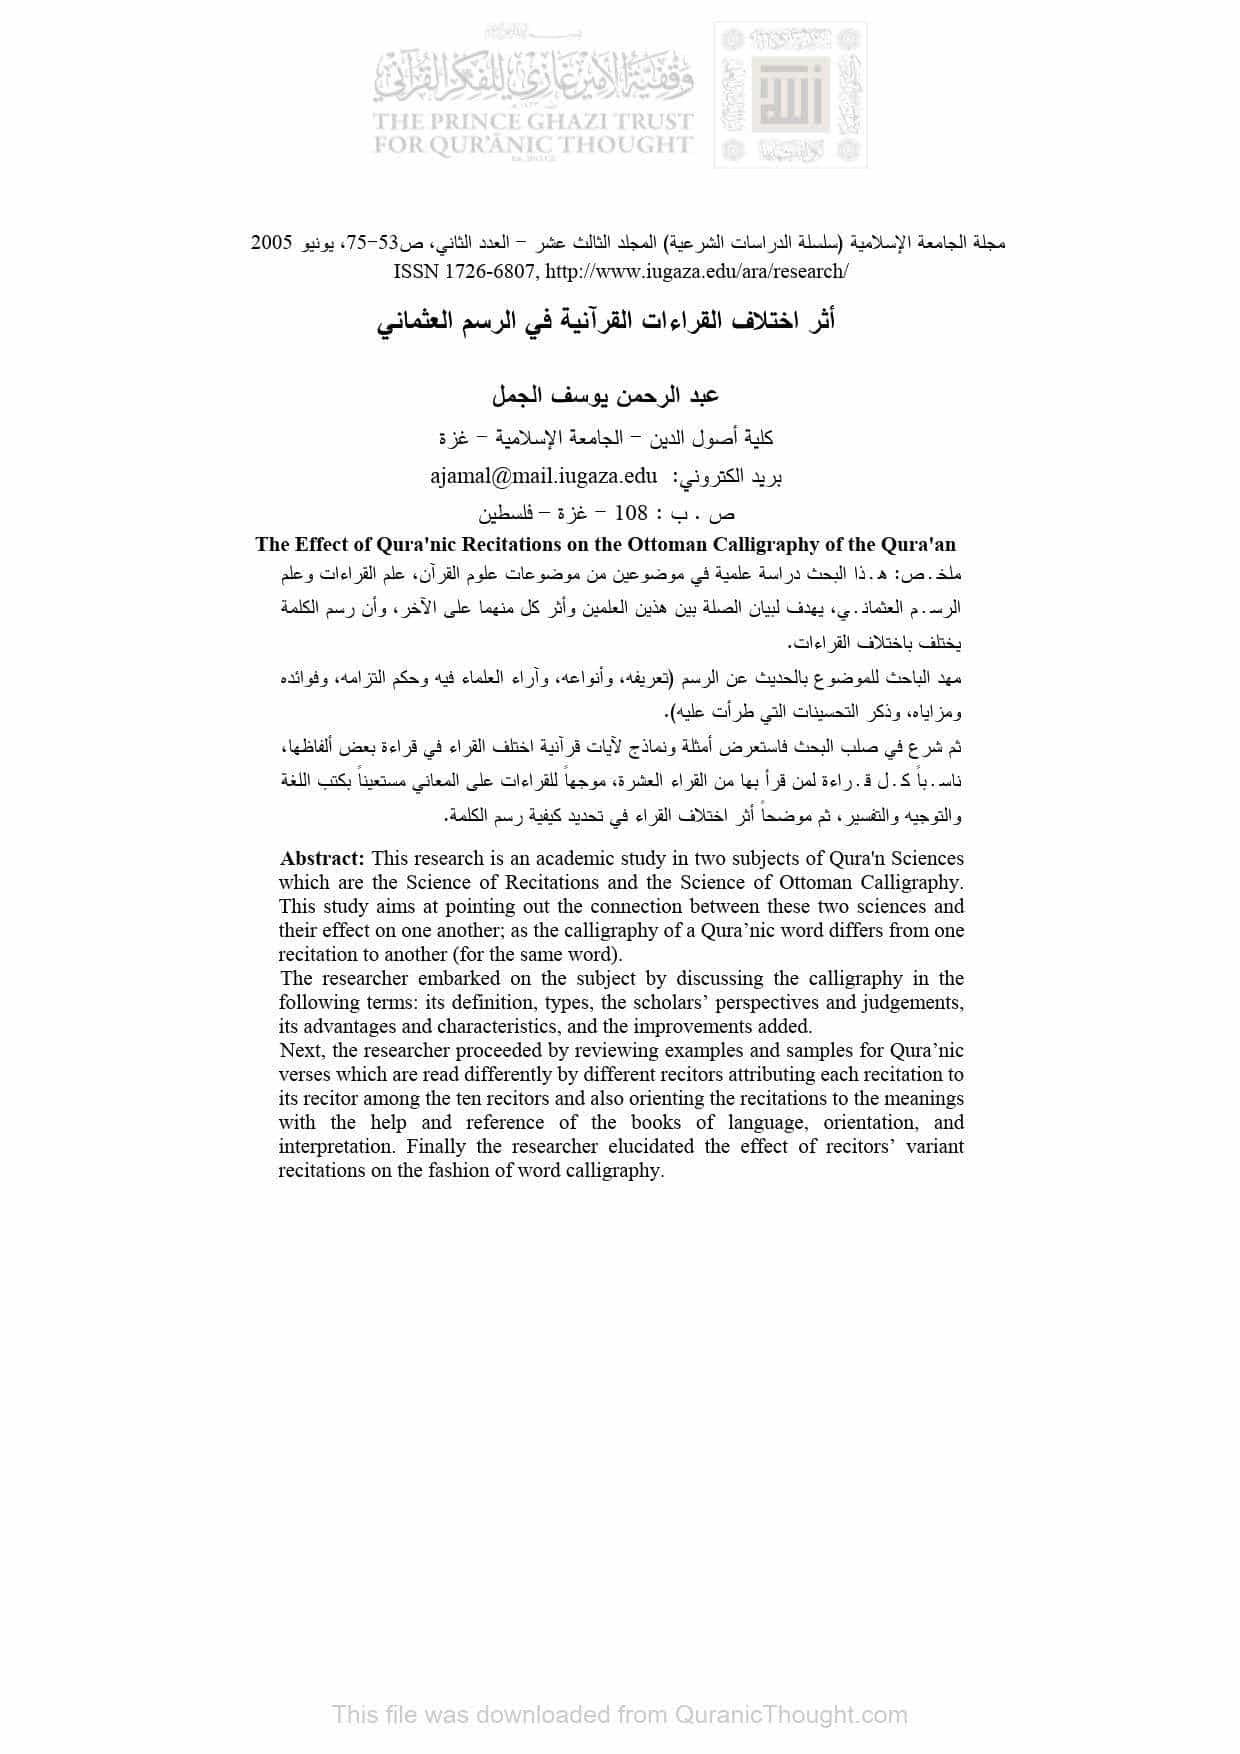 أثر إختلاف القراءات القرآنية في الرسم العثماني ( مقالة )